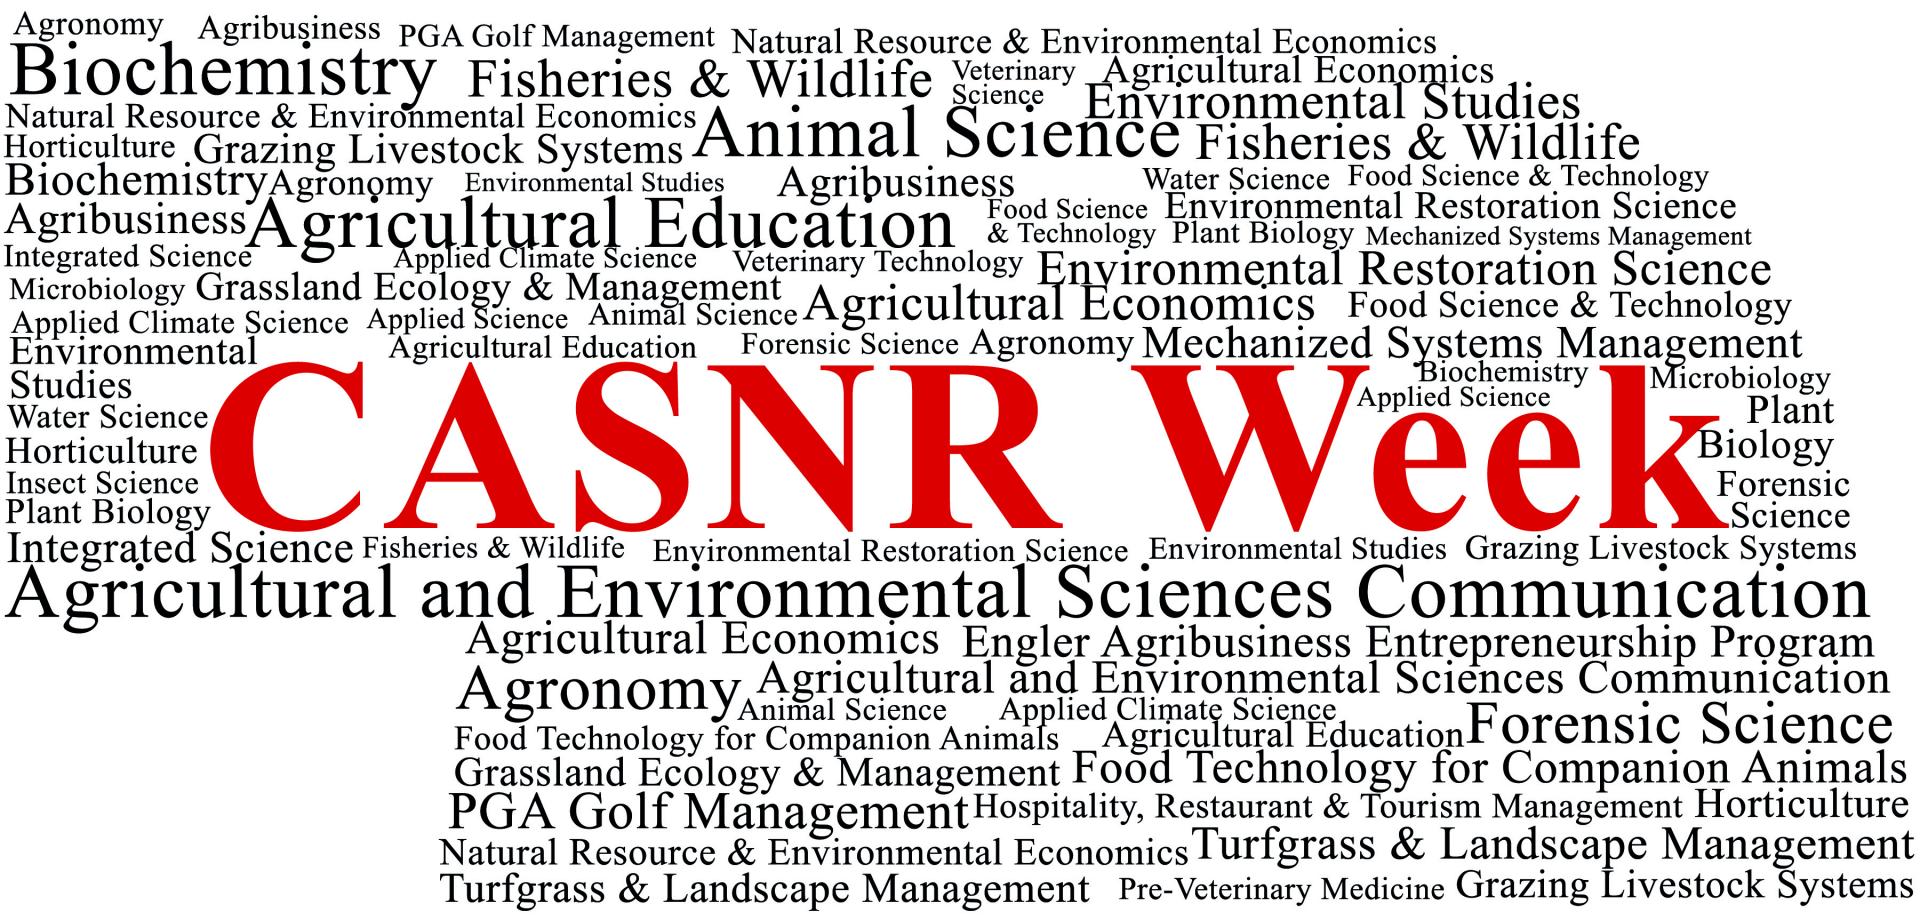 April 9 - 16 is CASNR Week 